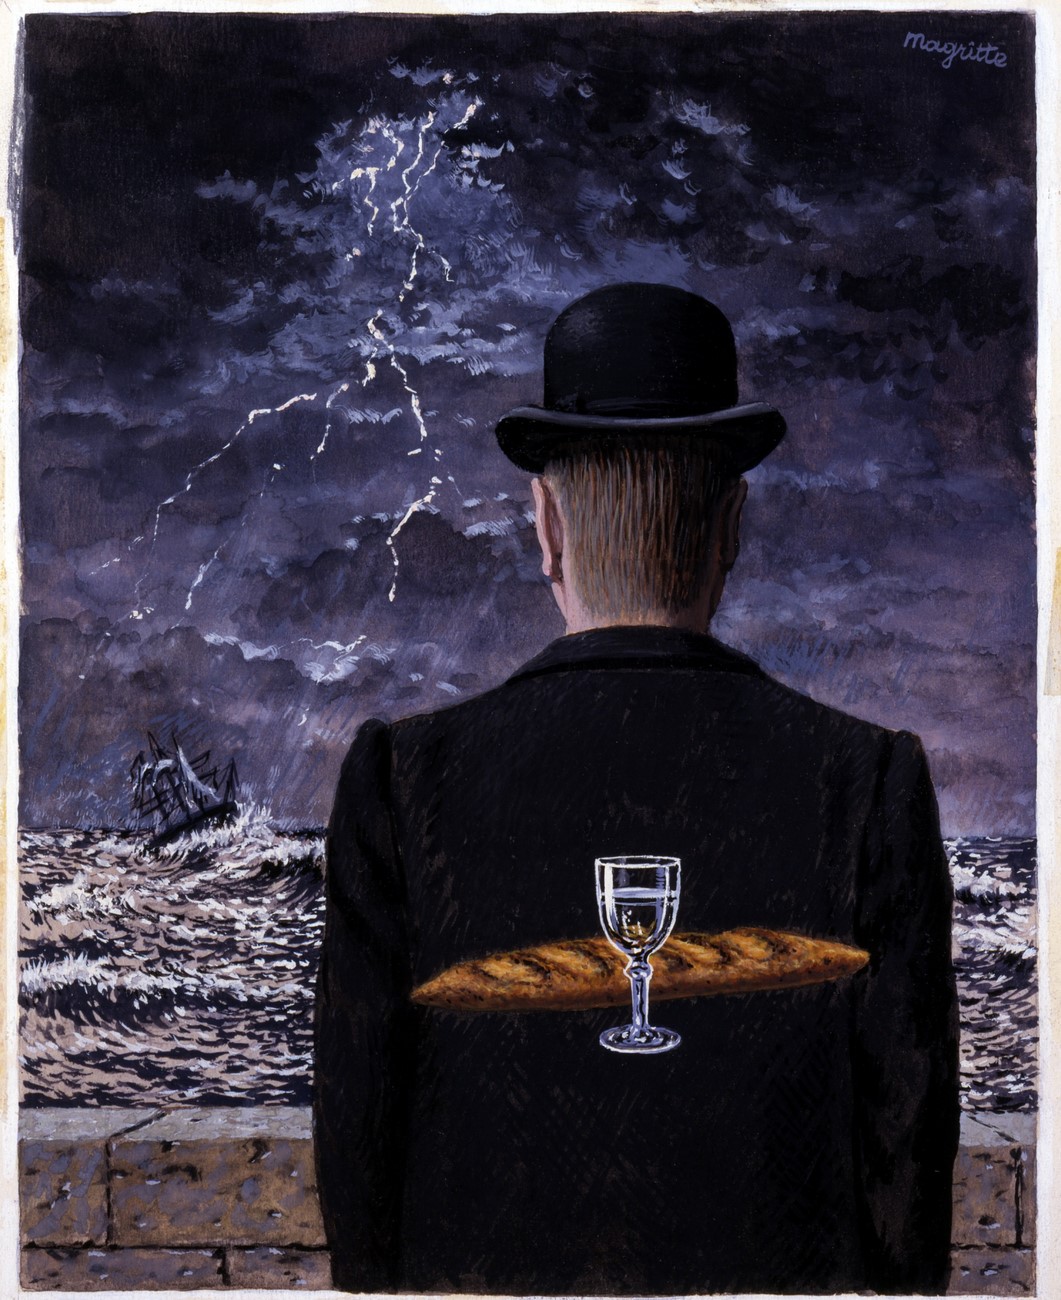 Figue. 11 – René Magritte, « Bien que toute la doctrine des vents ont été libérés à jouer dans la saleté, de sorte que le berdade est dans le domaine, nous sans gloire, de mettre en doute sa force. Elle et lutte mensonge; qui a connu la vérité et se sentait pire dans une rencontre libre et ouvert?» - John Milton Areopagitica, 1644; série: Les grandes idées de l'homme occidental, 1962; 1958, gouache sur papier en carton, 23.4 x 19.0 cm, Smithsonian American Art Museum, Presente de Container Corporation of America, 1984.124.195 .